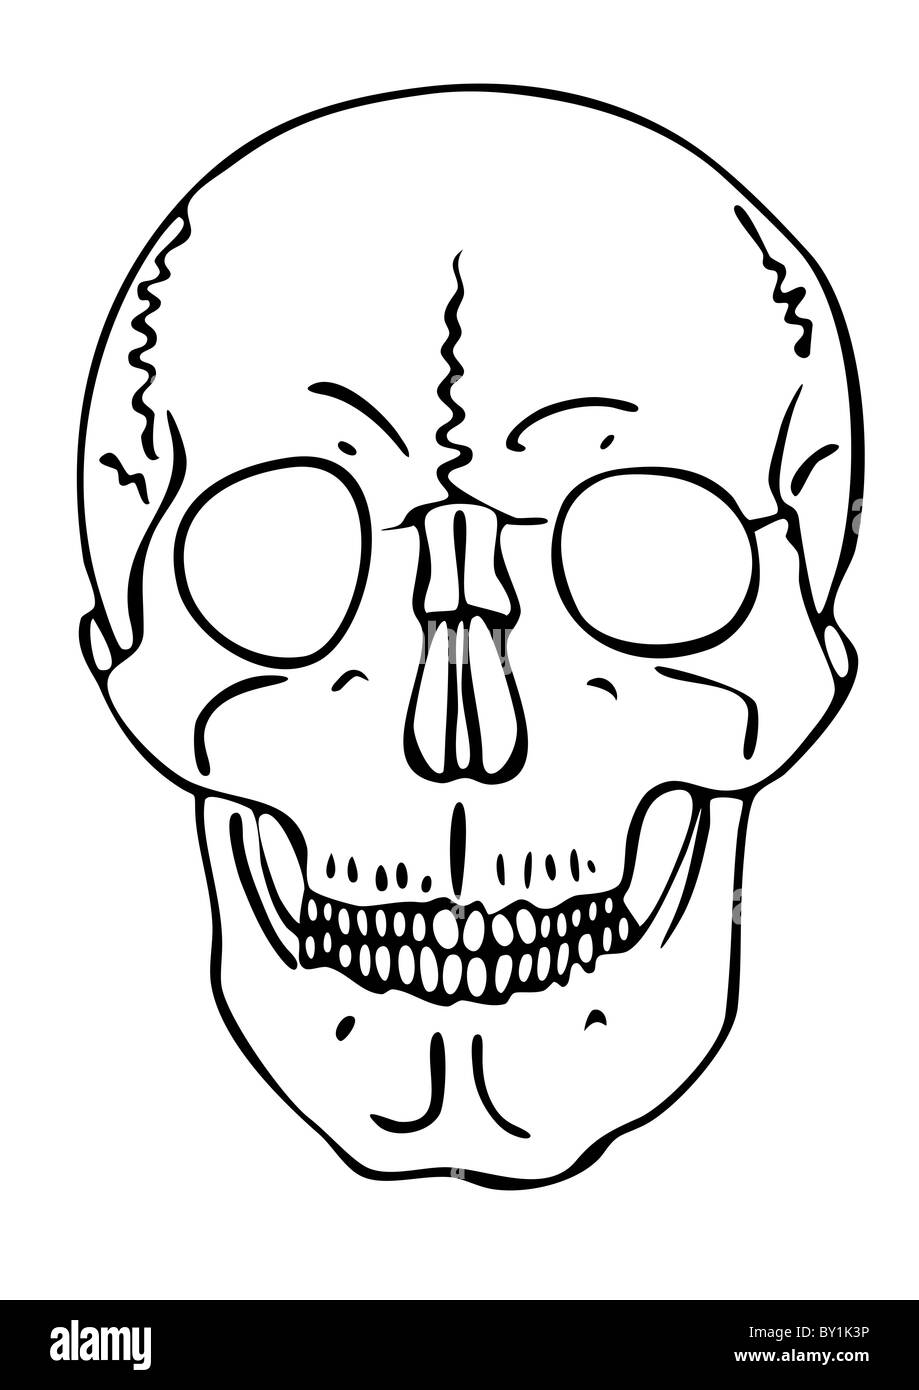 skull - warning symbol Stock Photo